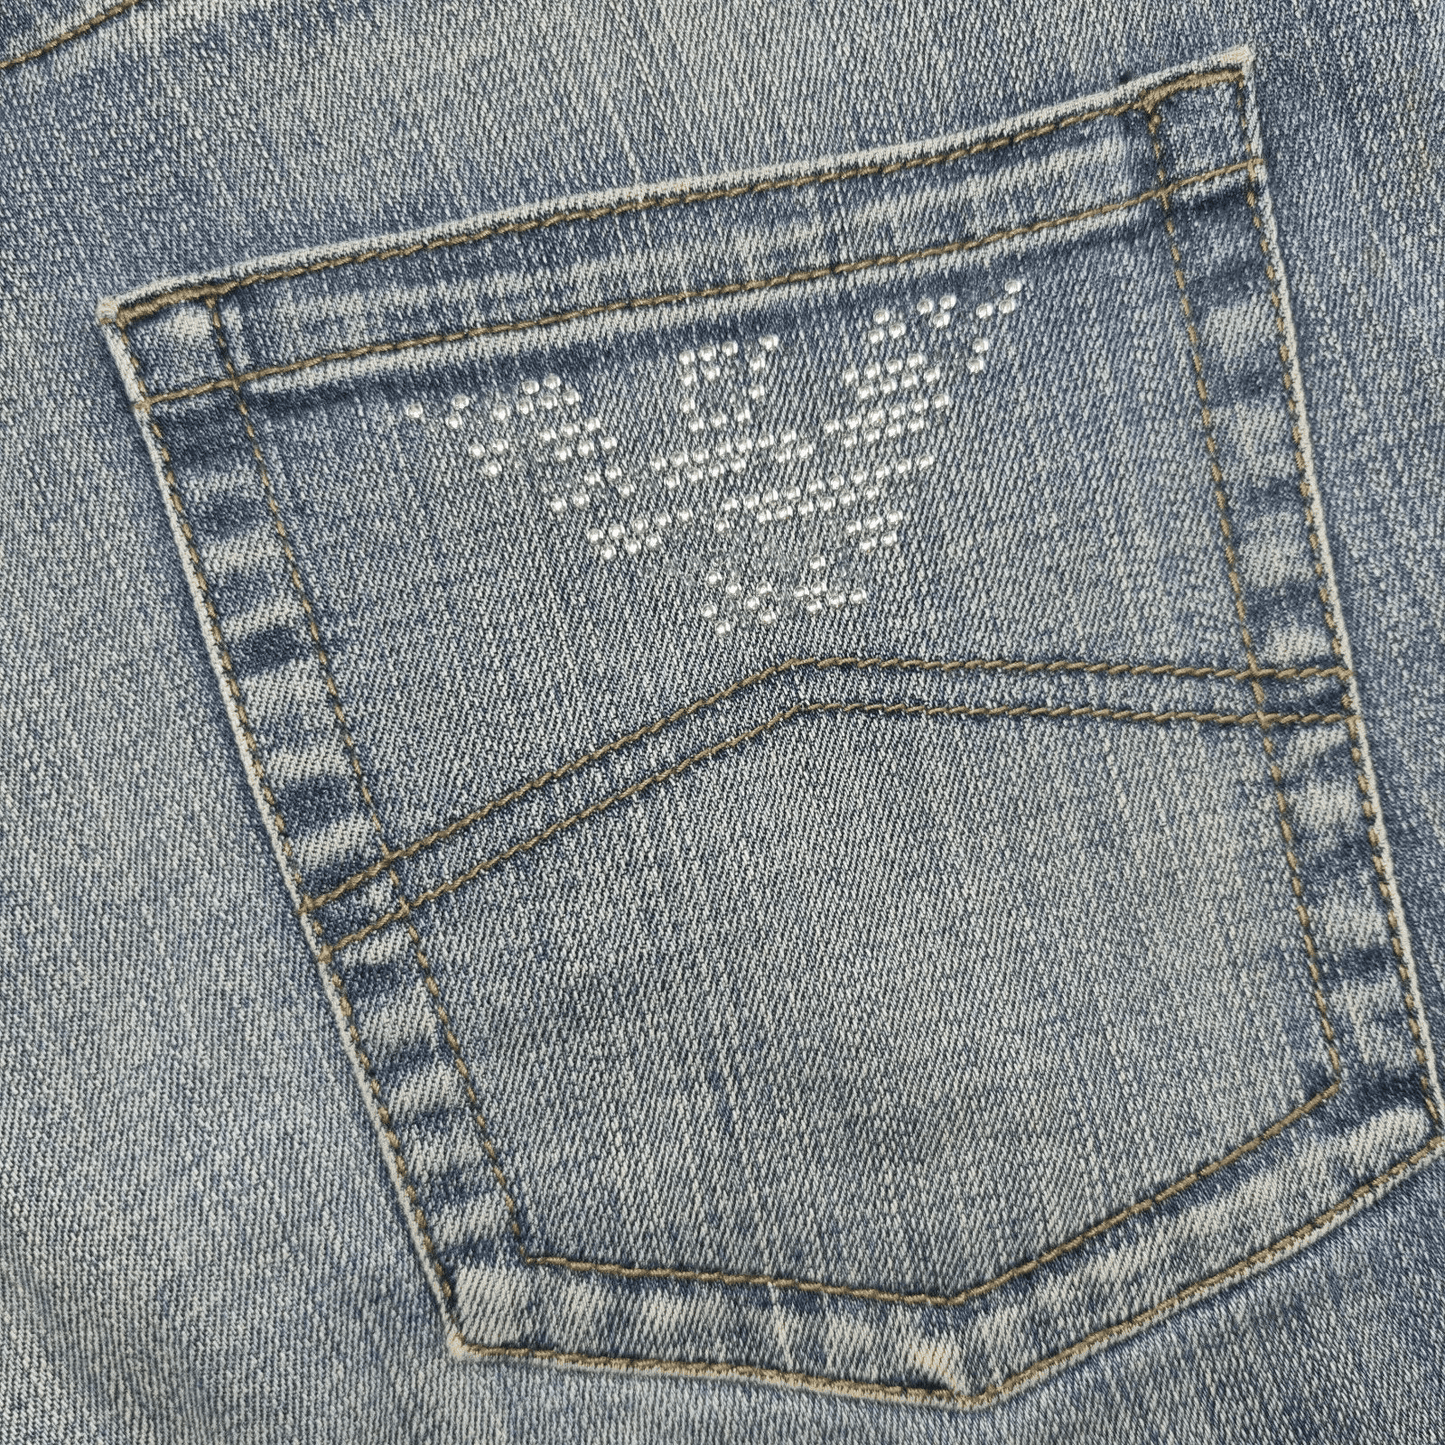 Womens Jeans Armani W31 L32 Blue Flared Indigo 006 Size 29 Zip Up Slim Fit - Bonnie Lassio